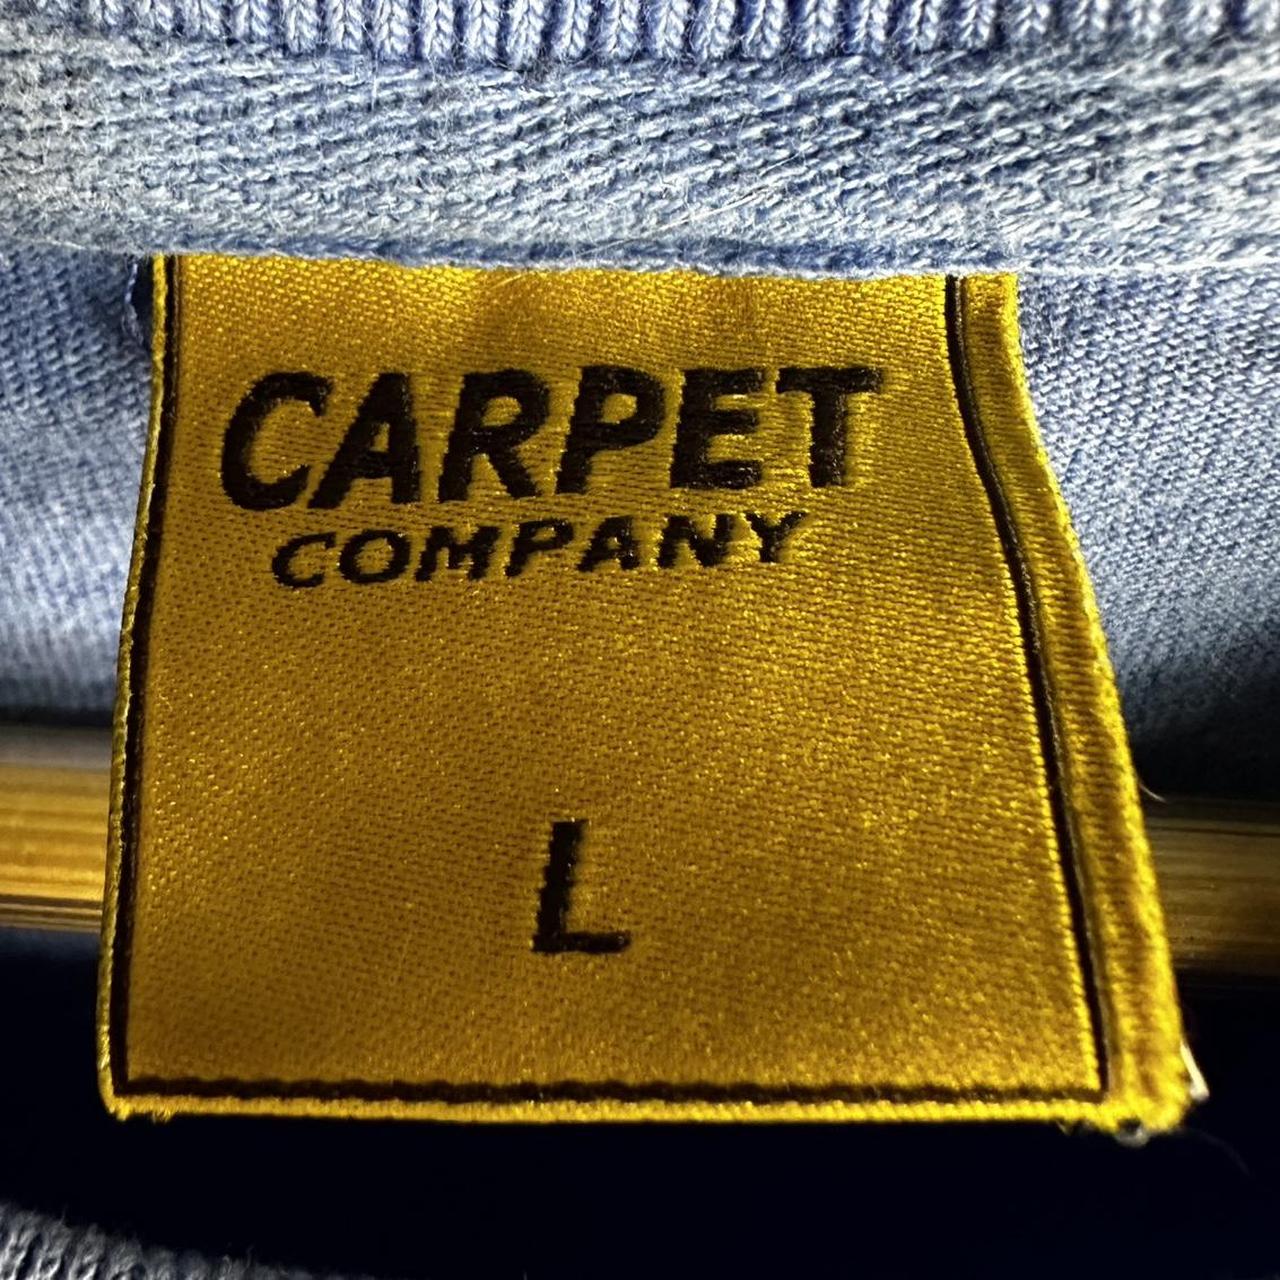 Rare Company Carpet Sheep Skate Tshirt Size Large... - Depop